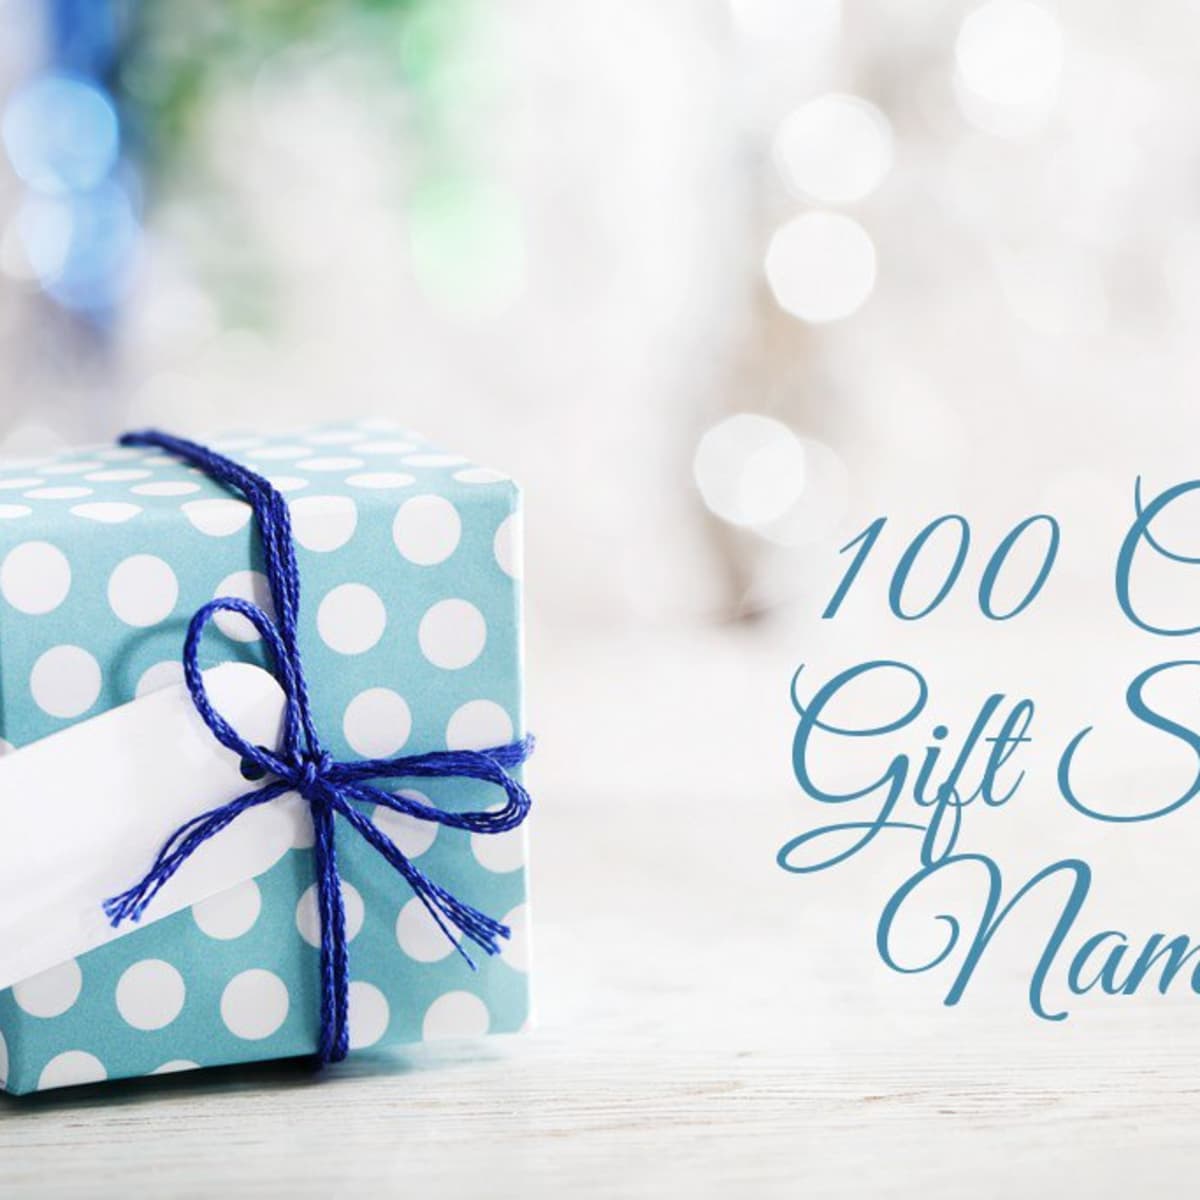 Cute Gift Shop Ideas -